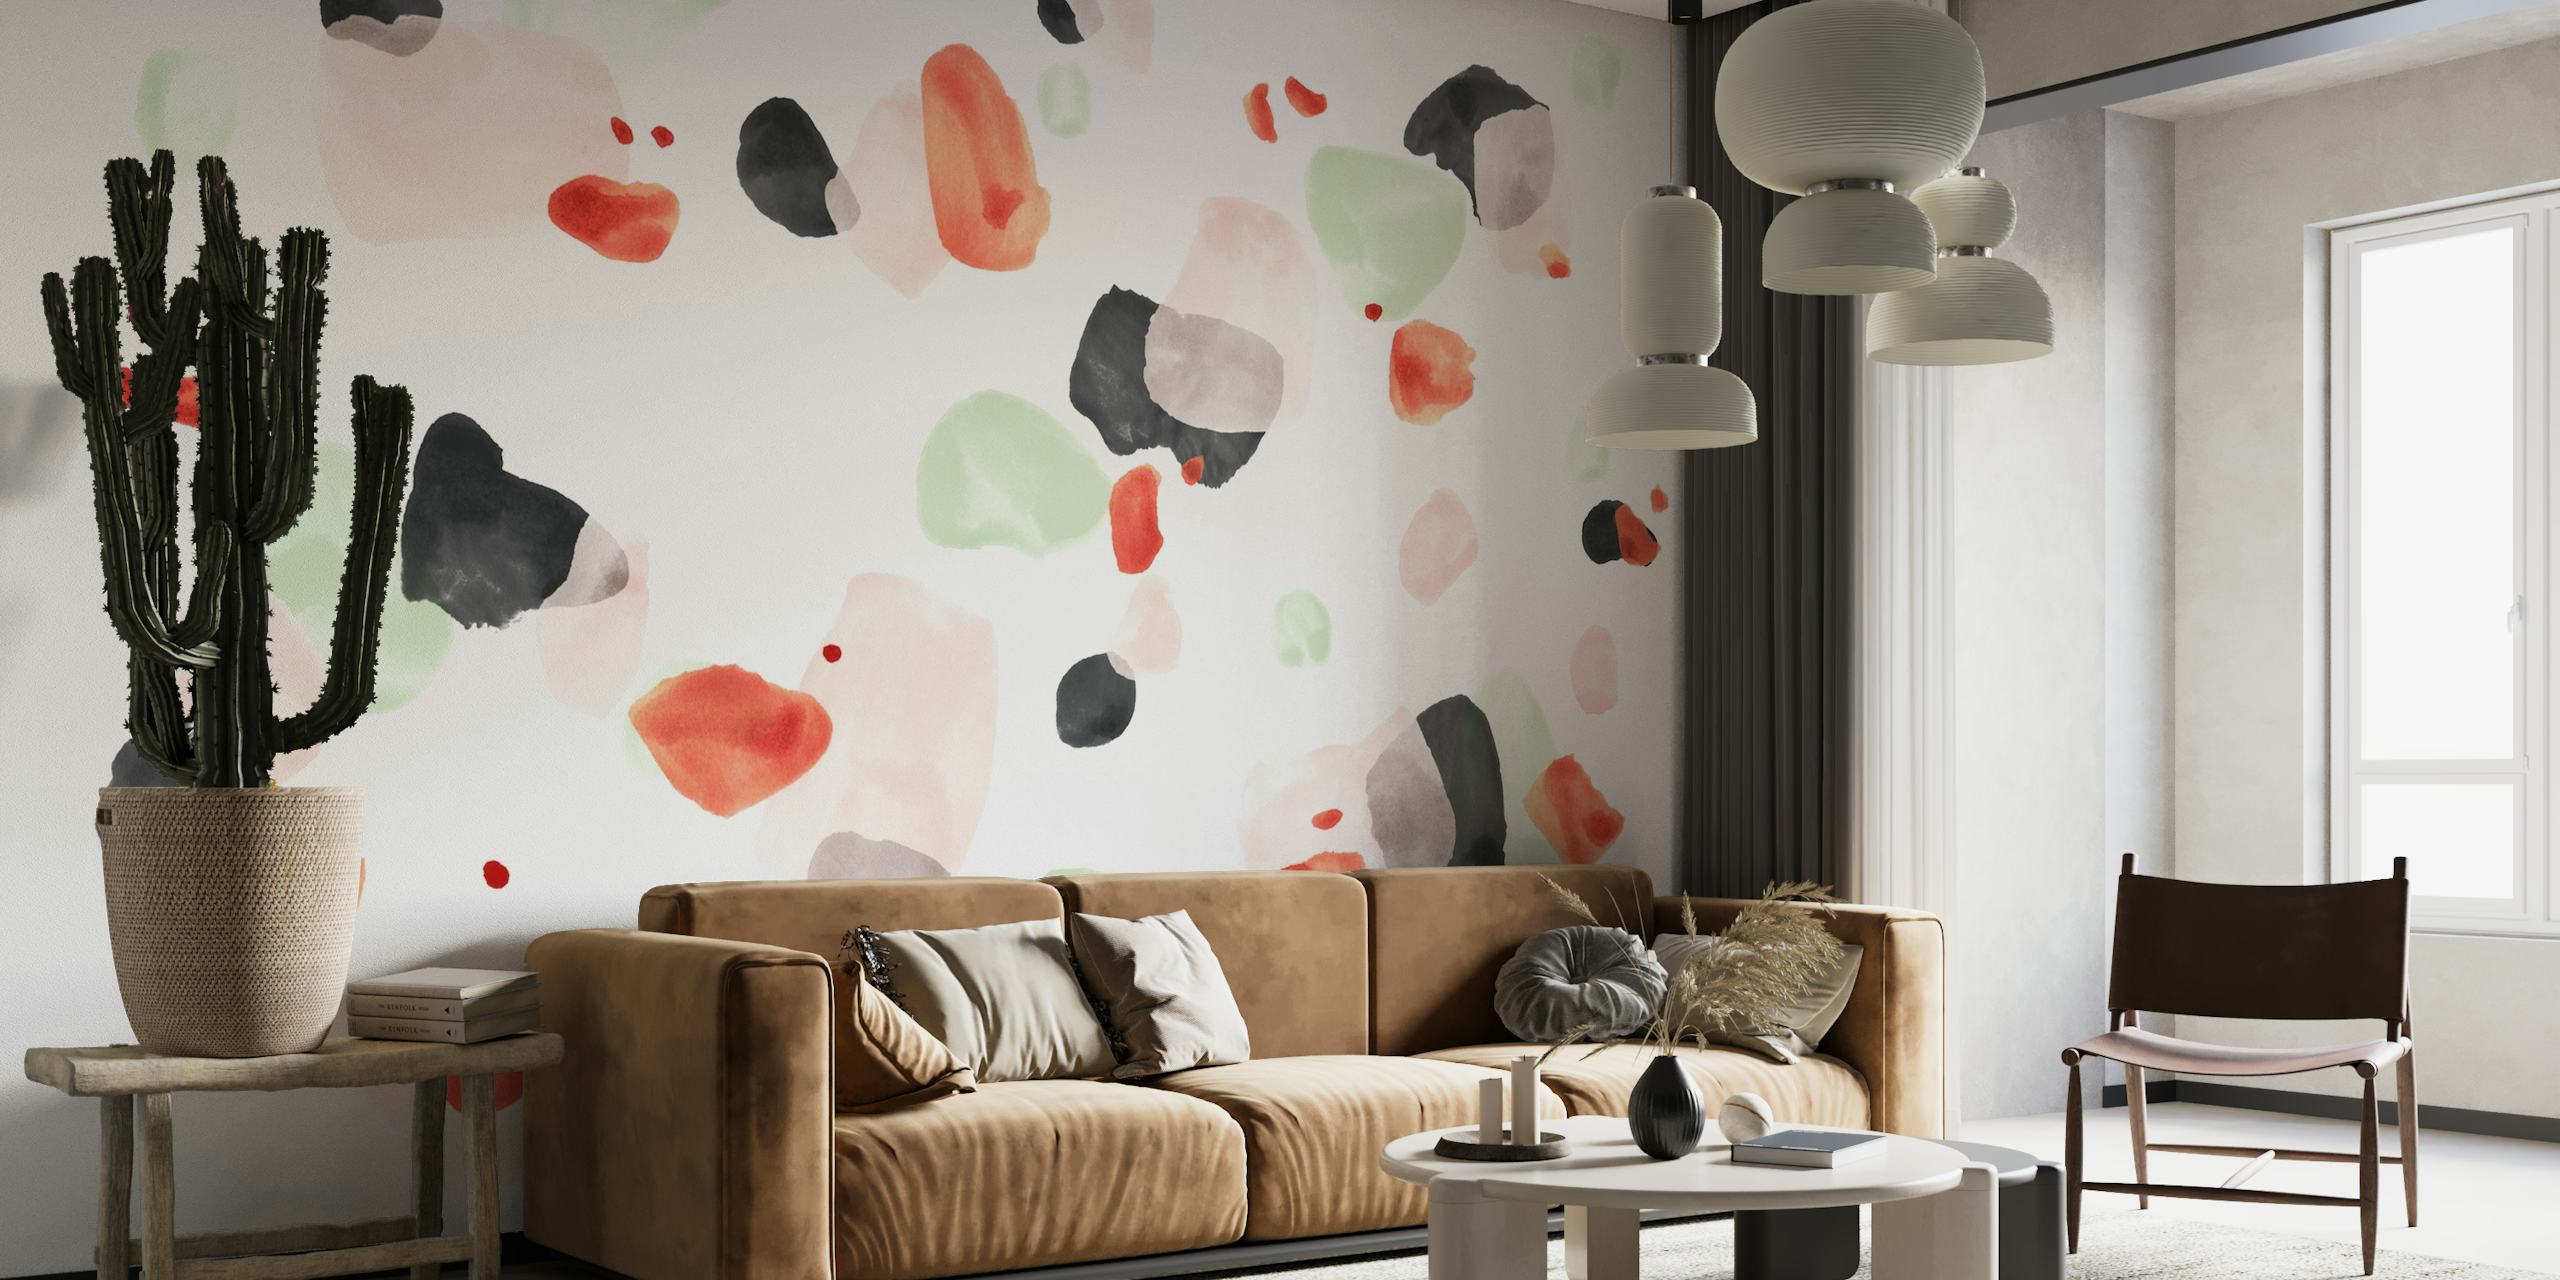 Abstraktes Terrazzo 06-Wandbild mit verstreuten Formen in sanften Farben